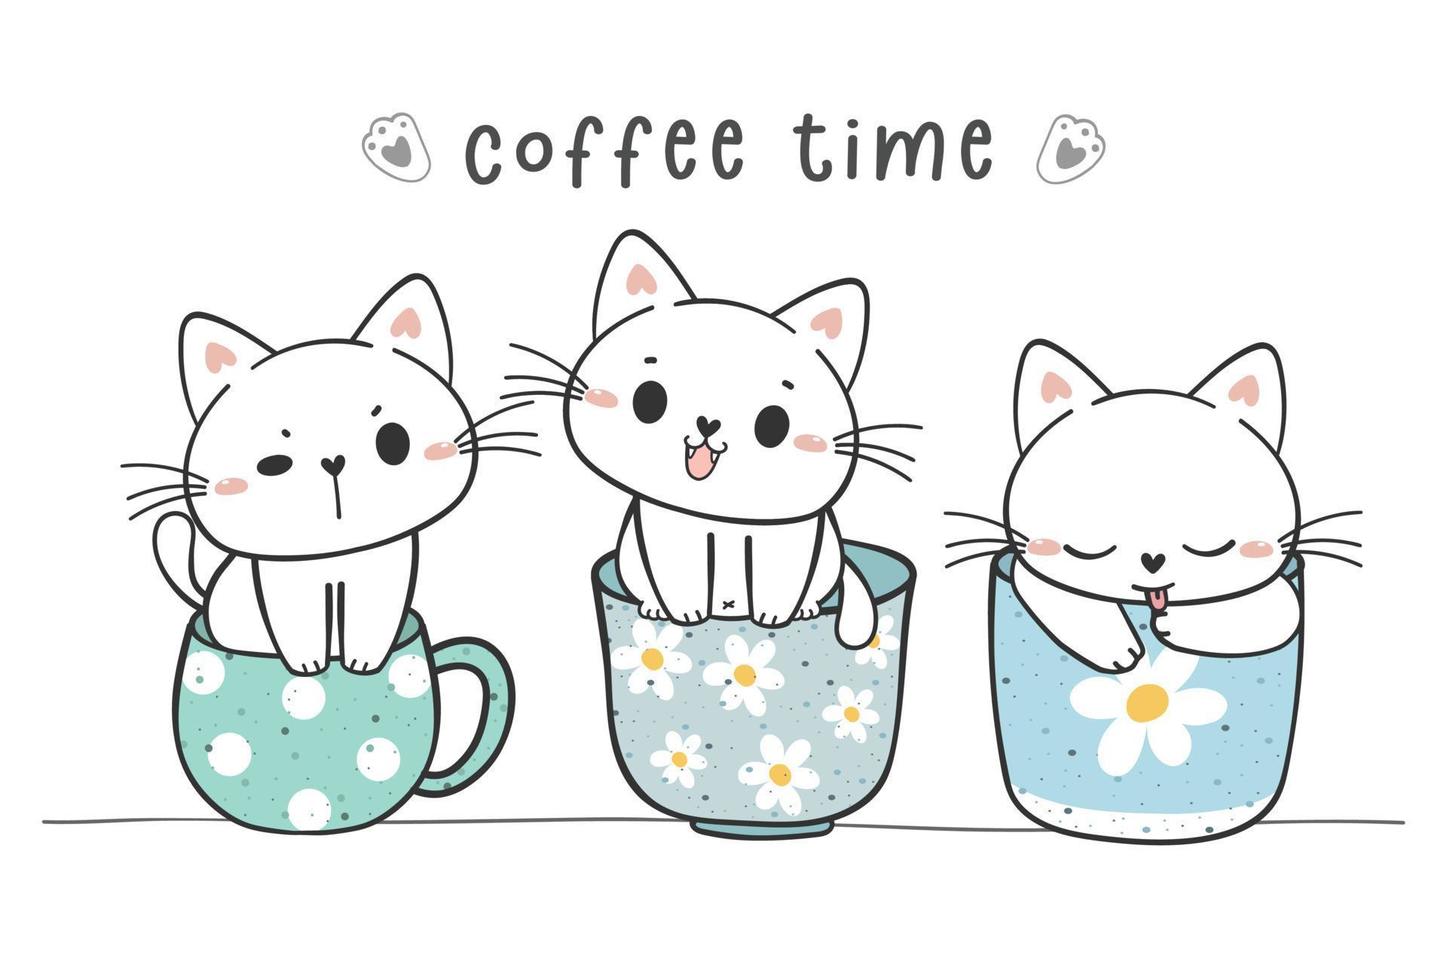 grupo de lindos gatitos divertidos sentados en la colección de tazas de café, adorable animal mascota dibujo a mano doodle vector